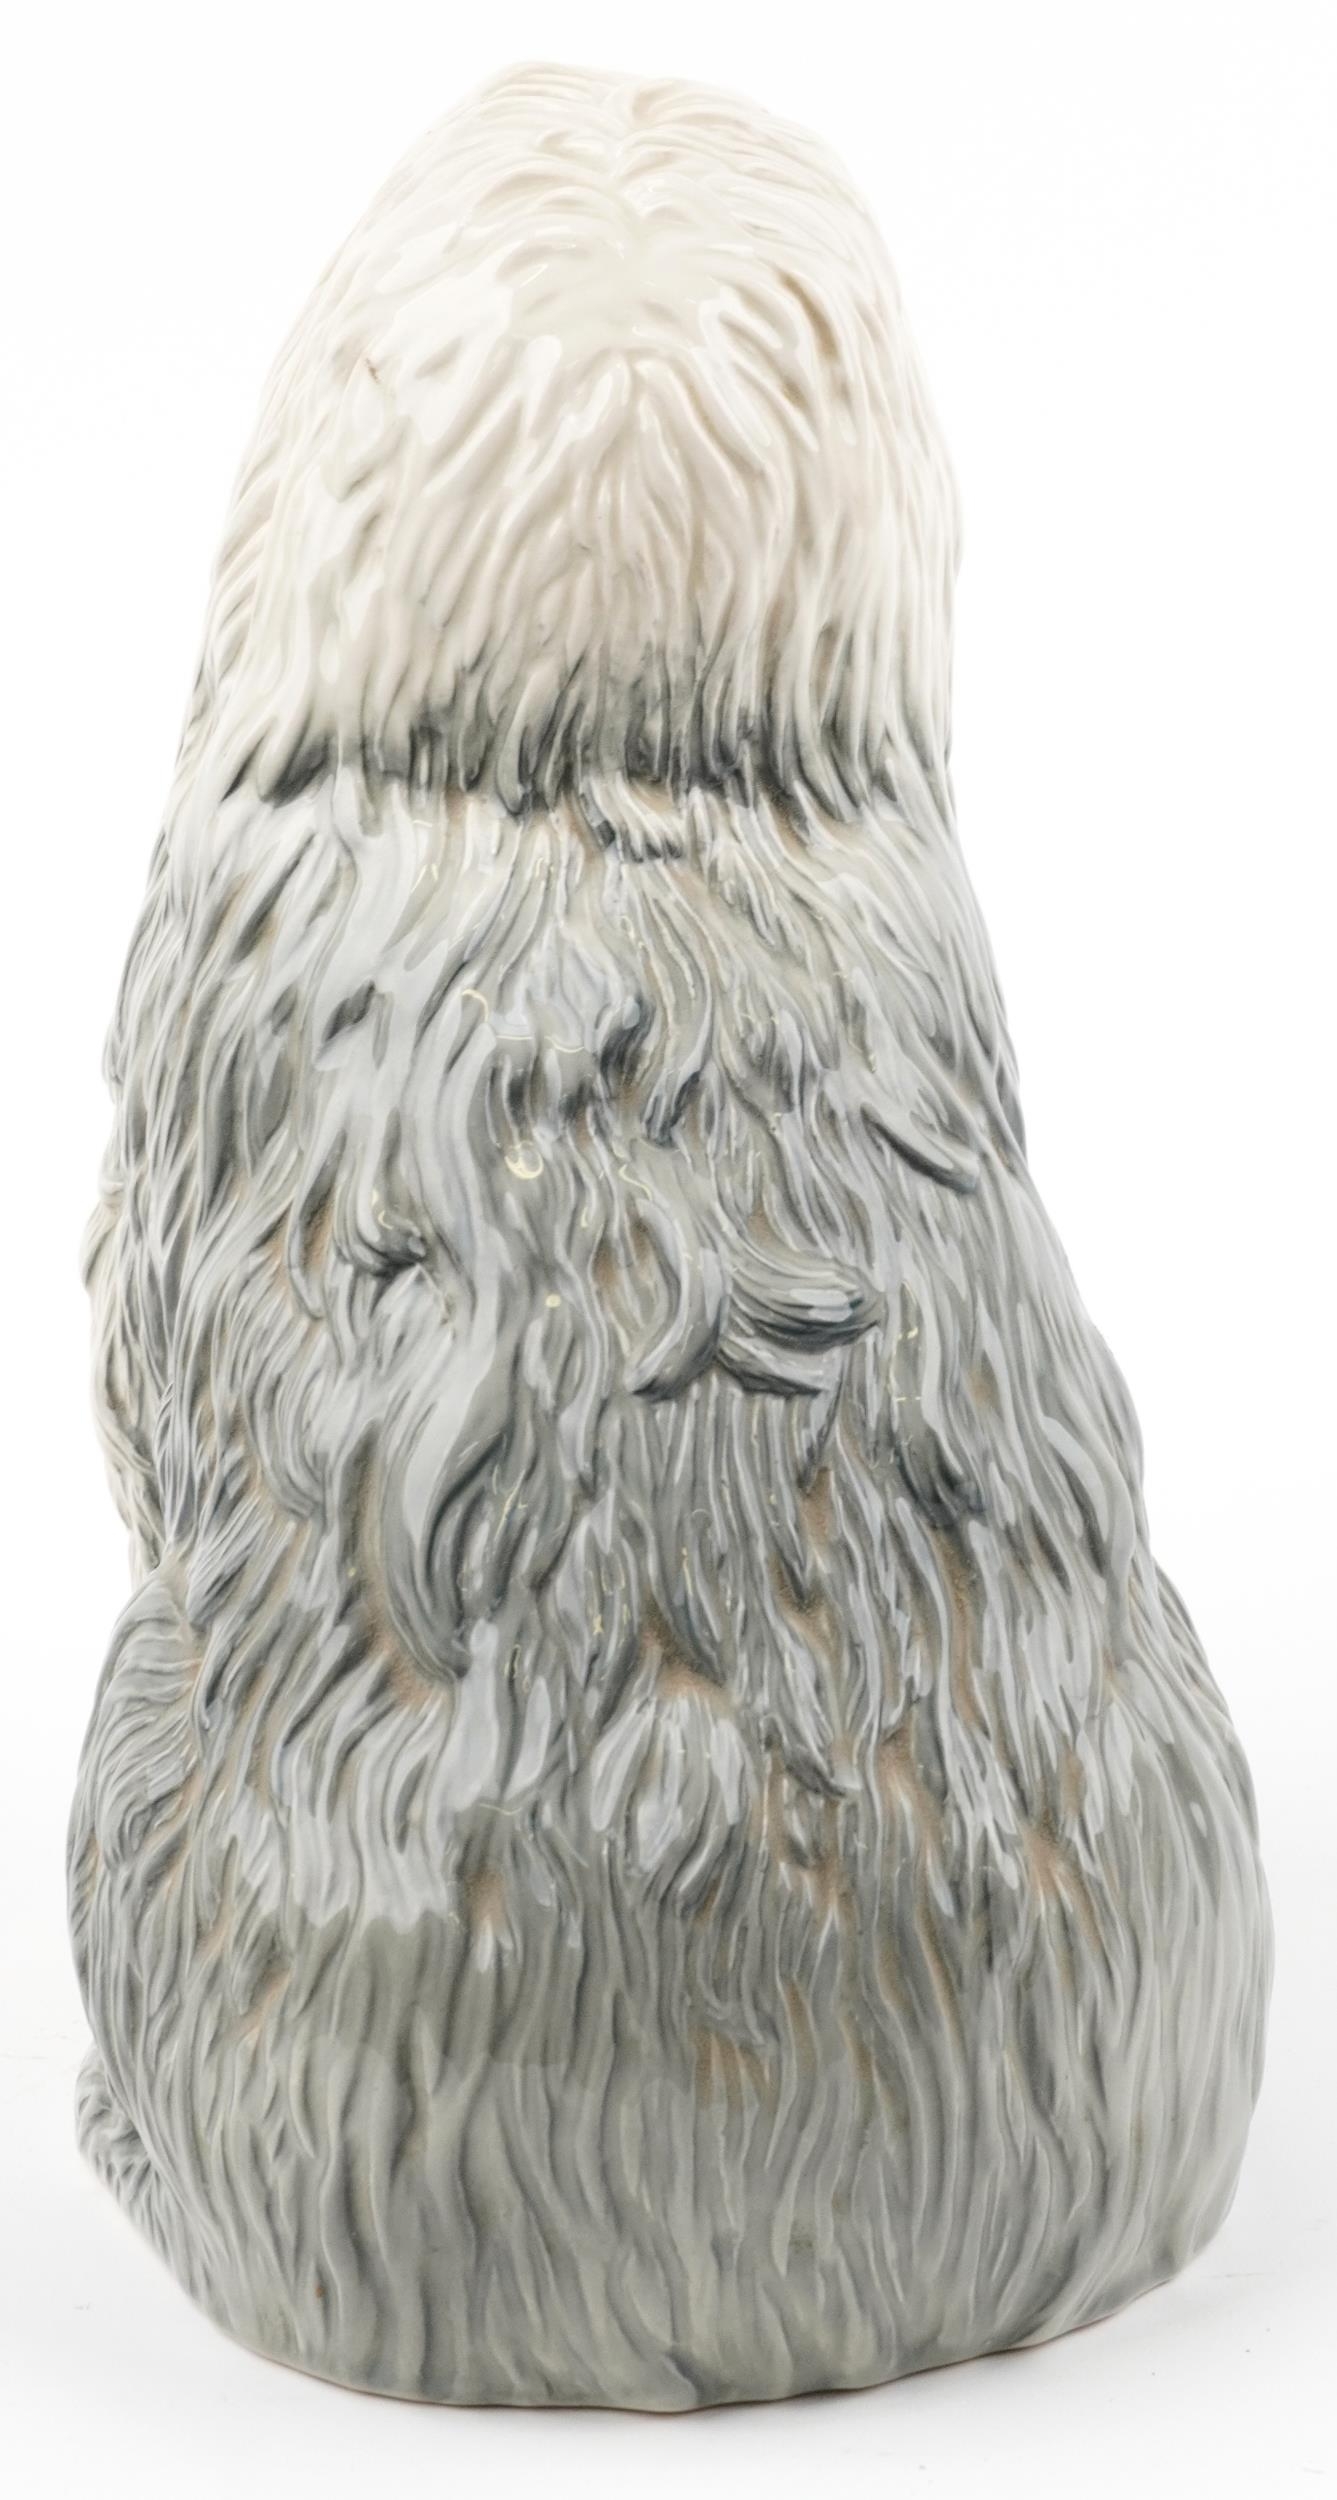 Large Beswick Old English Sheepdog, 29.5cm high - Image 2 of 4